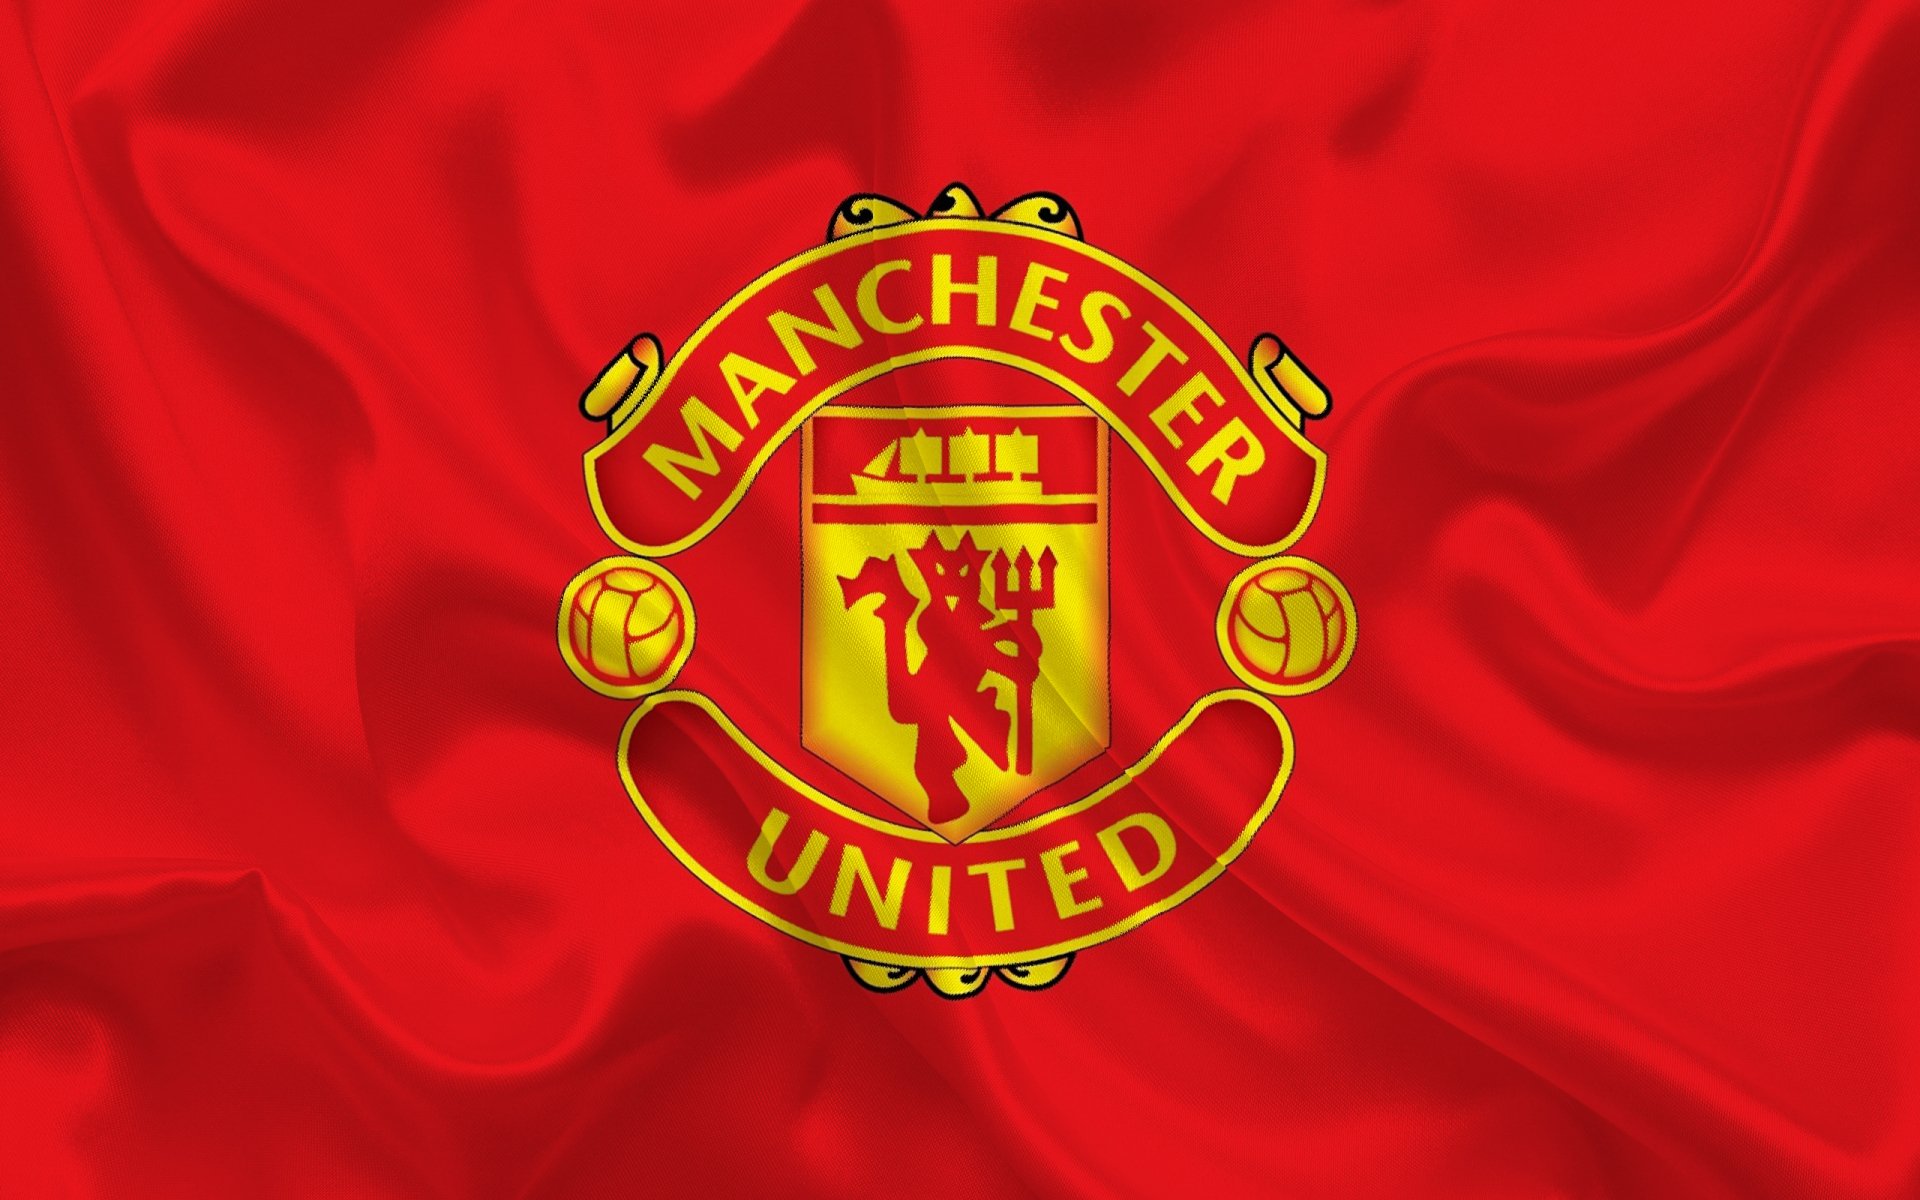 Manchester United – nơi quy tụ những siêu sao bóng đá hàng đầu thế giới. Logo của Manchester United là biểu tượng của đội bóng, được nhìn thấy ở khắp nơi trên sân cỏ và có một giá trị rất lớn đối với người hâm mộ của đội bóng. Xem ảnh Manchester United logo để tưởng nhớ những kỷ niệm đáng nhớ của câu lạc bộ bóng đá này.